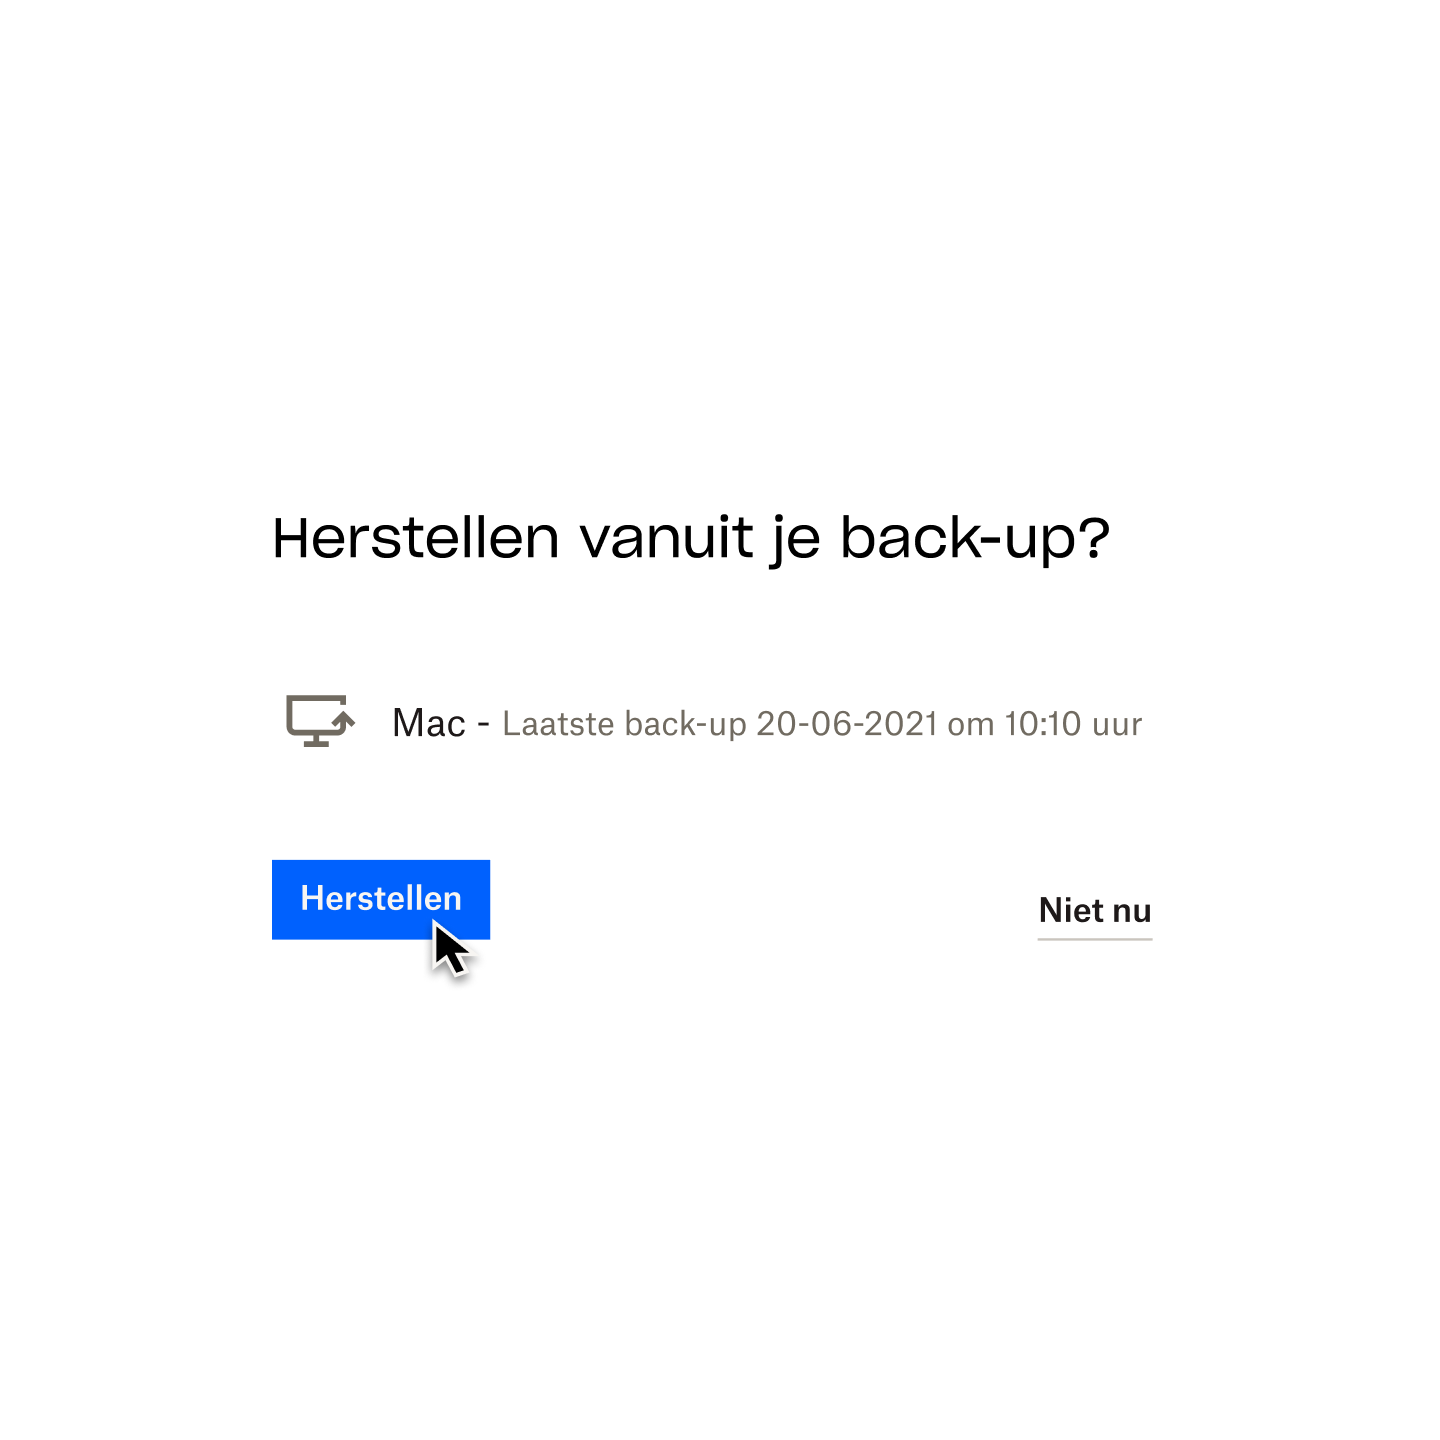 Een prompt van Dropbox Backup met de vraag 'Terugzetten vanaf je back-up?' en een muiscursor die boven een knop met het label 'Terugzetten' zweeft.